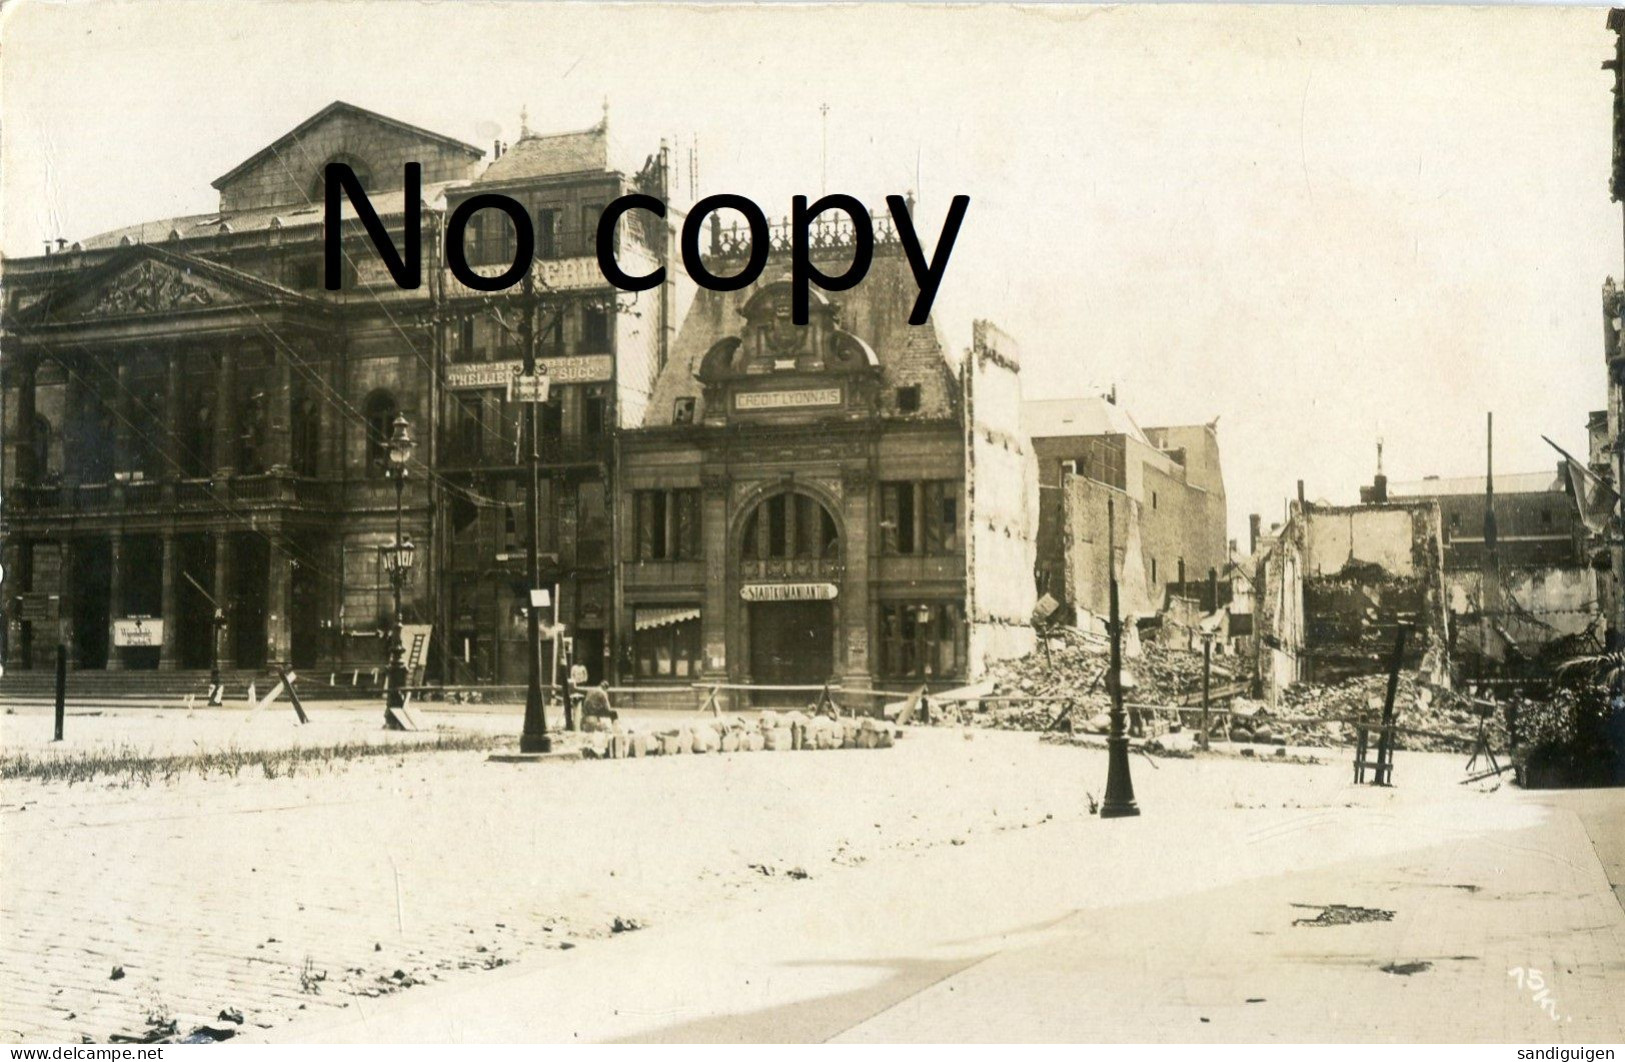 CARTE PHOTO ALLEMANDE  - LA PLACE EN RUINES A SAINT QUENTIN AISNE - GUERRE 1914 1918 - Guerre 1914-18